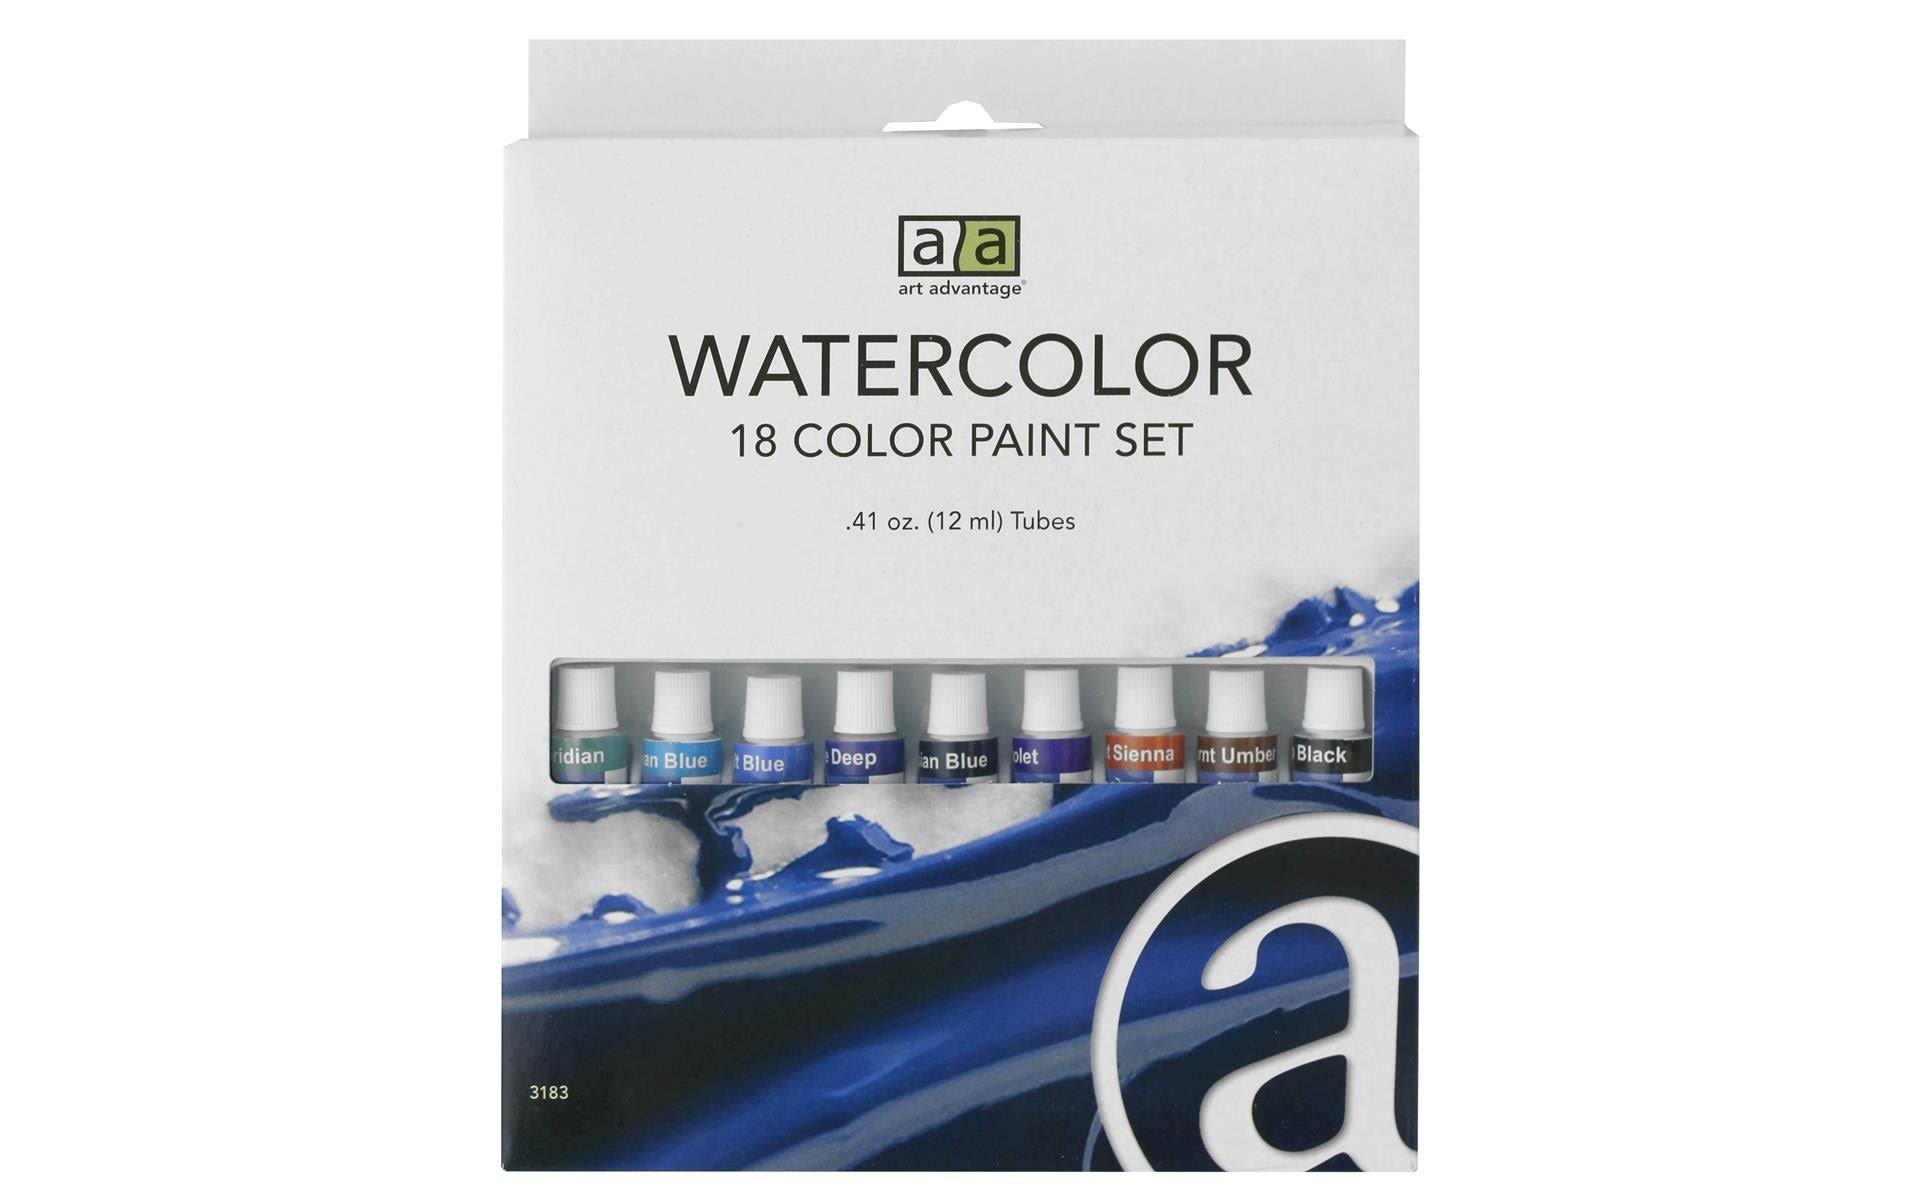 Art Advantage Watercolor Paint Set - 18 Color, 12ml